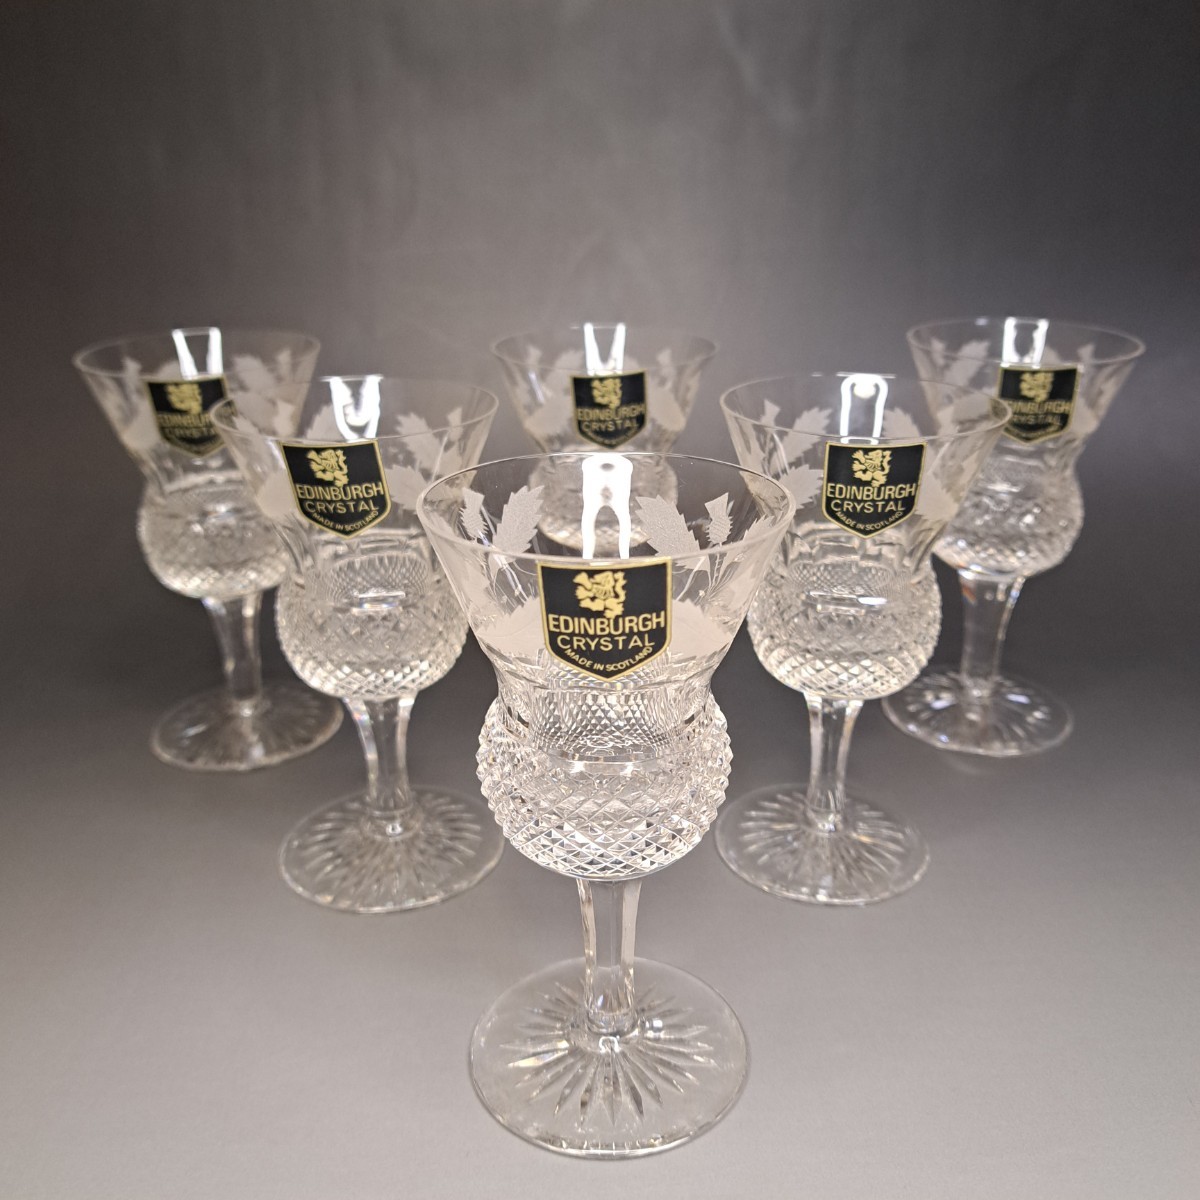 【貴重な未使用品】エジンバラクリスタル シスル Edinburgh Crystal グラス6客セット